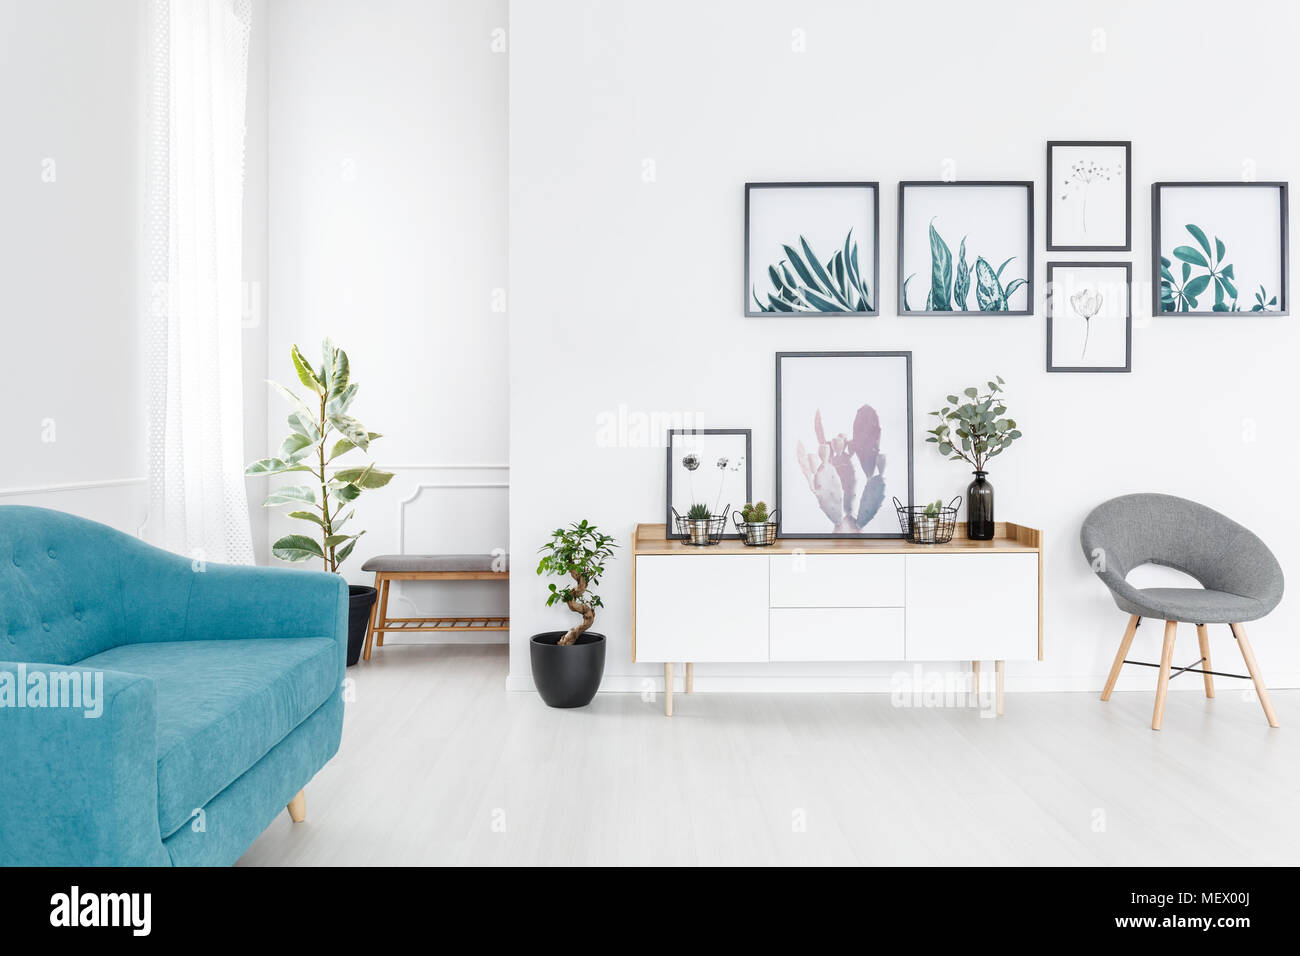 Einfache Poster Galerie hängen weiße Wand im eleganten Wohnzimmer Innenraum mit blauen Sofa Stockfoto